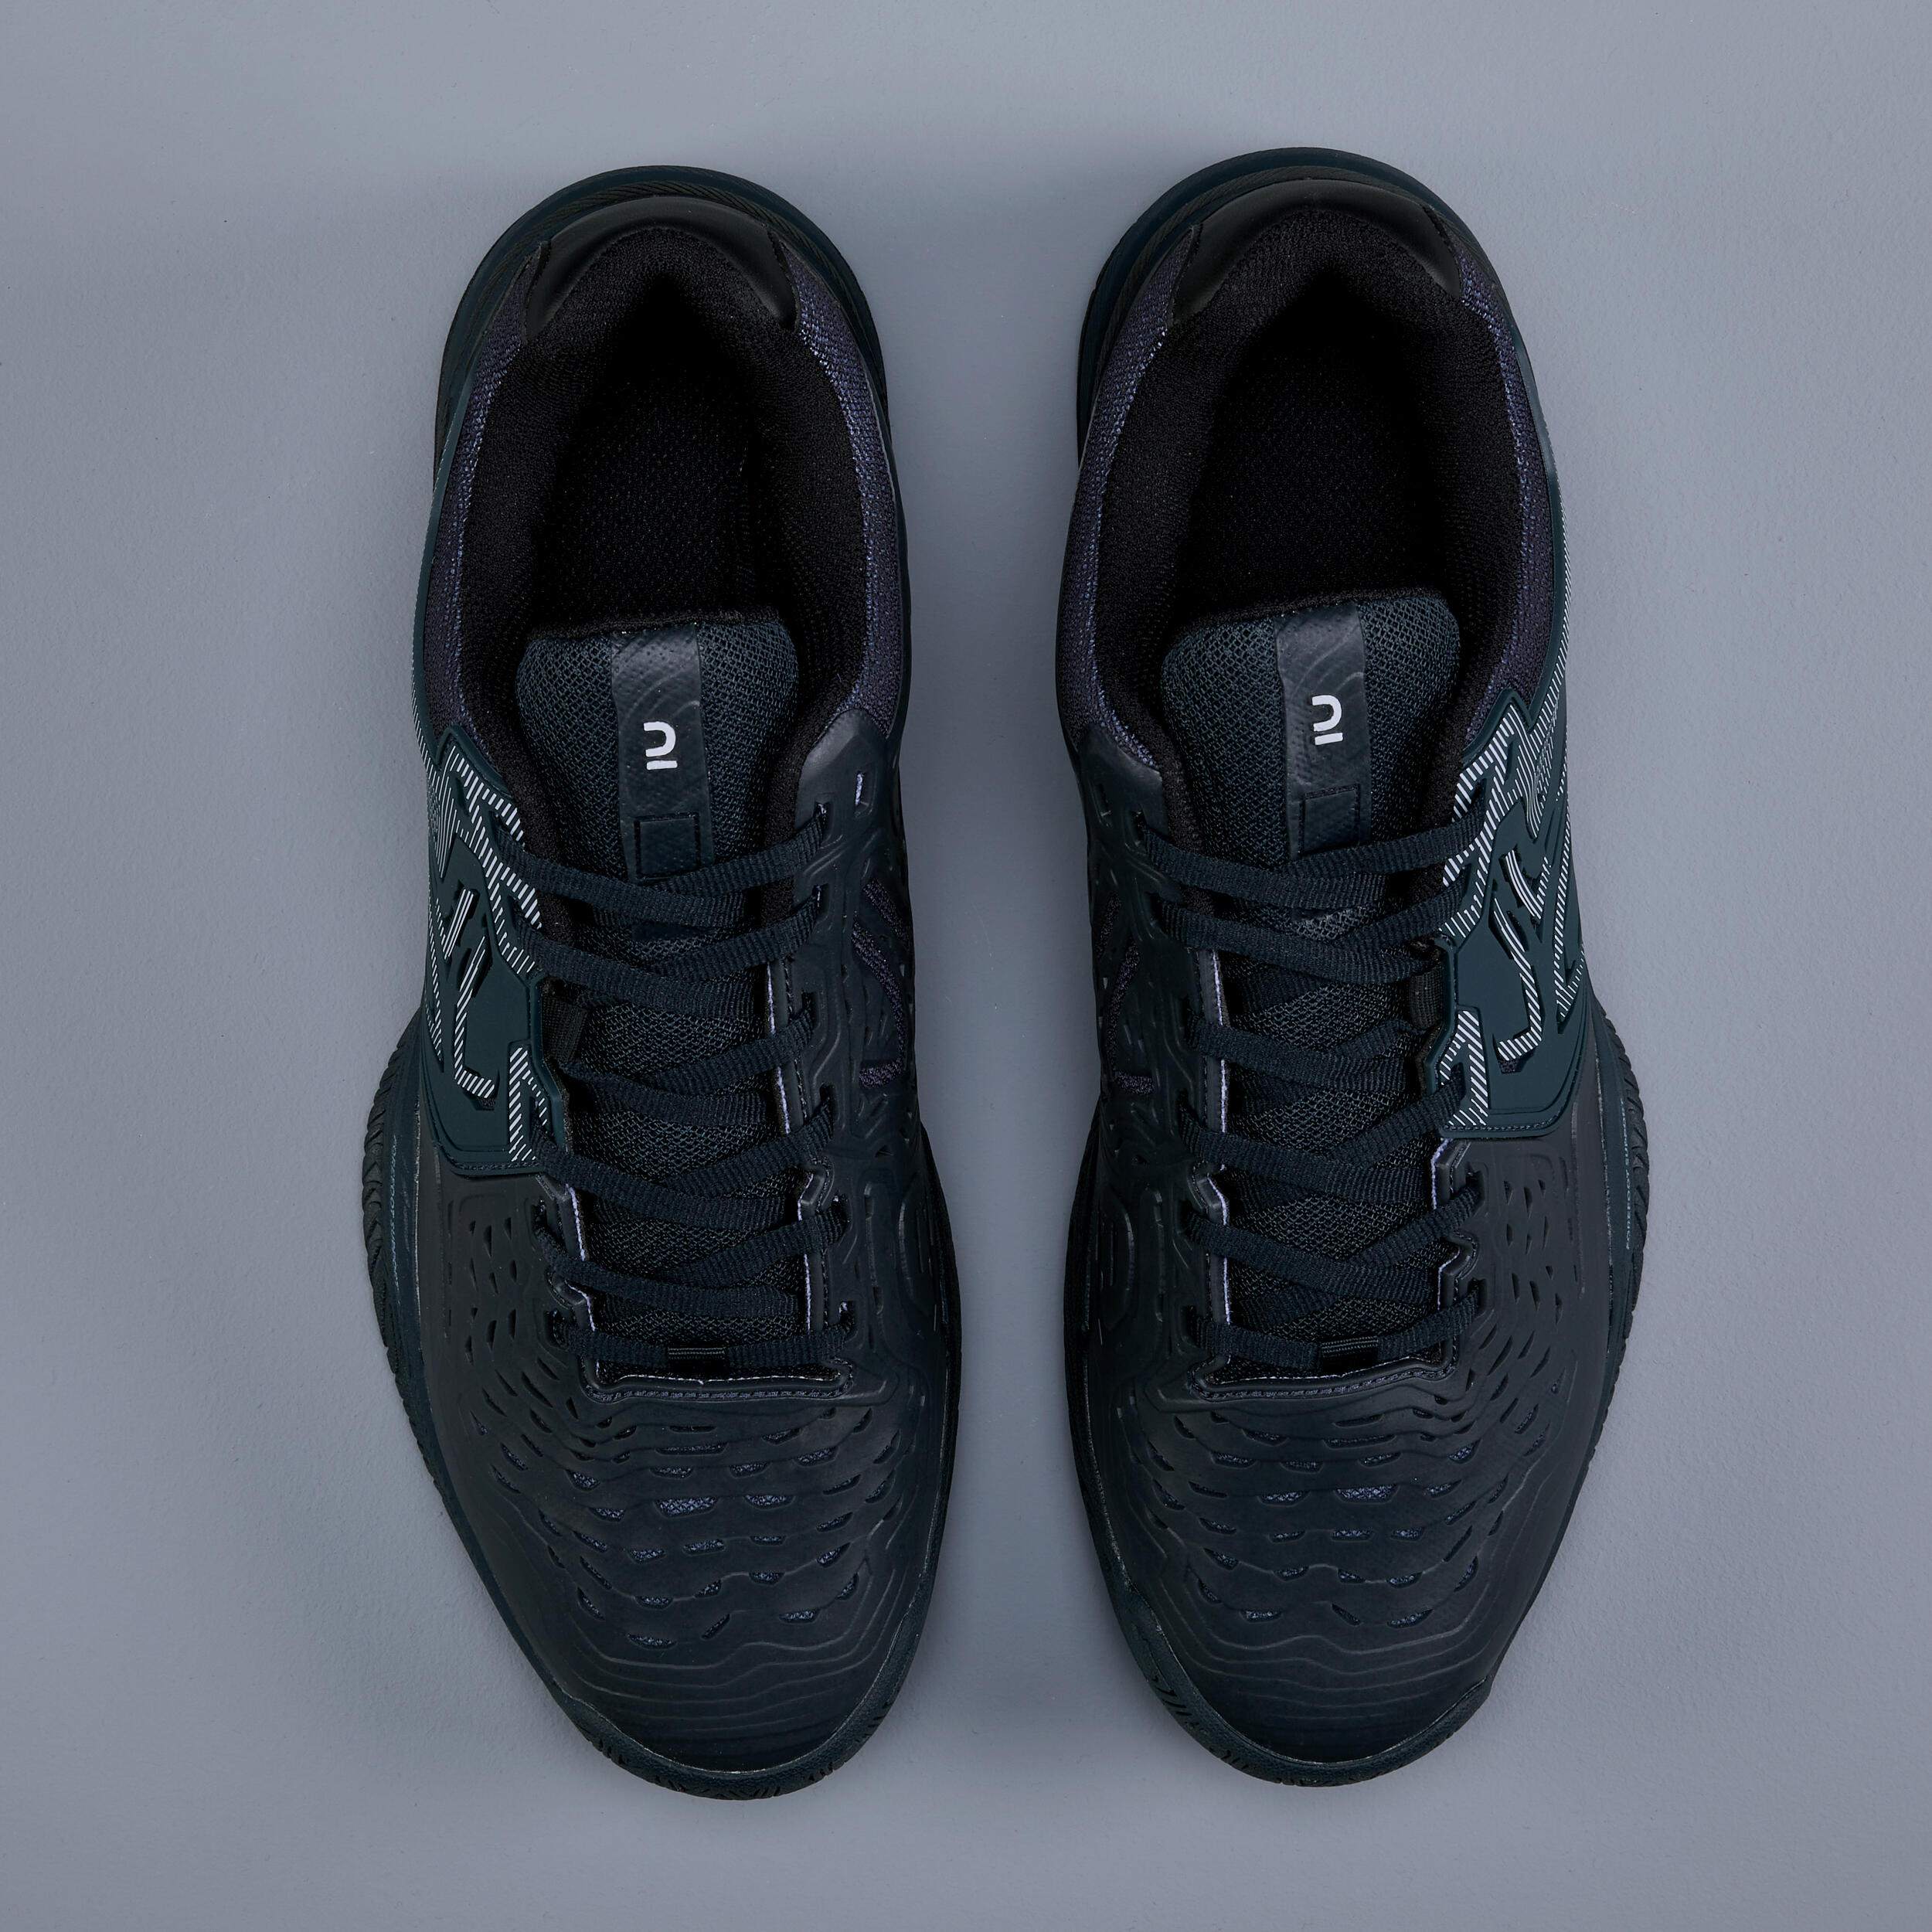 Men's Multi-Court Tennis Shoes TS560 - Grey 7/7